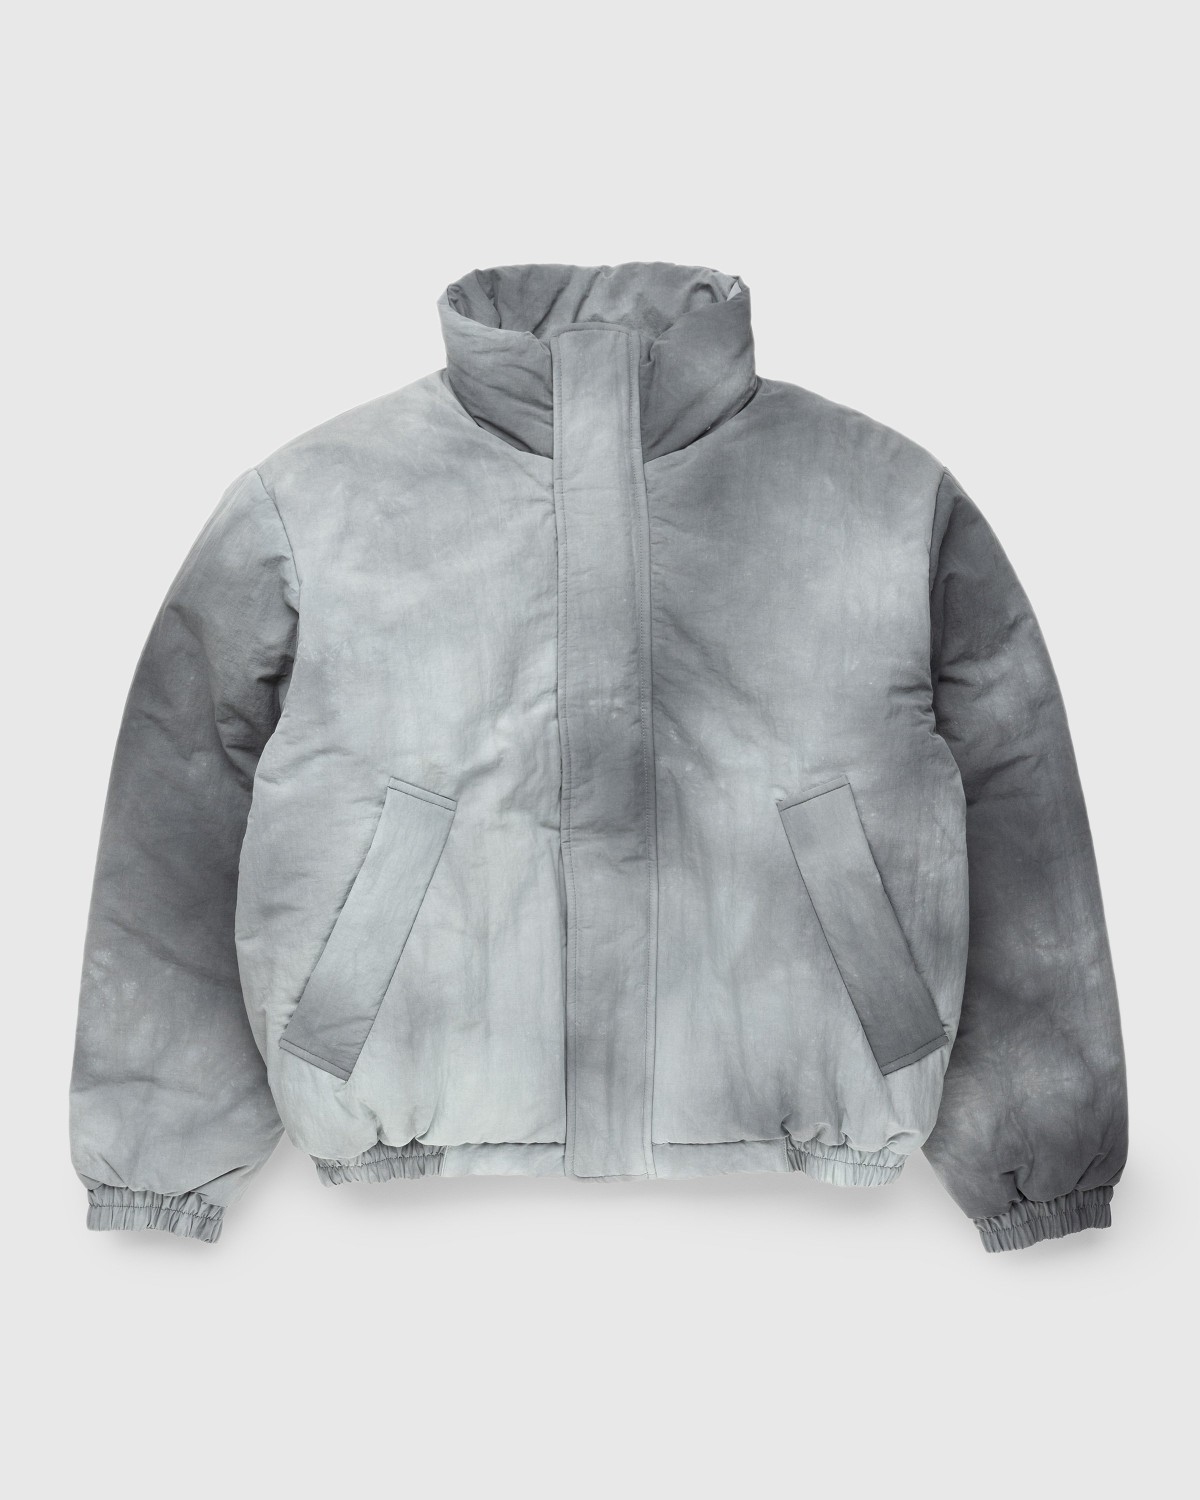 Acne Studios – Padded Nylon Jacket Gray | Highsnobiety Shop